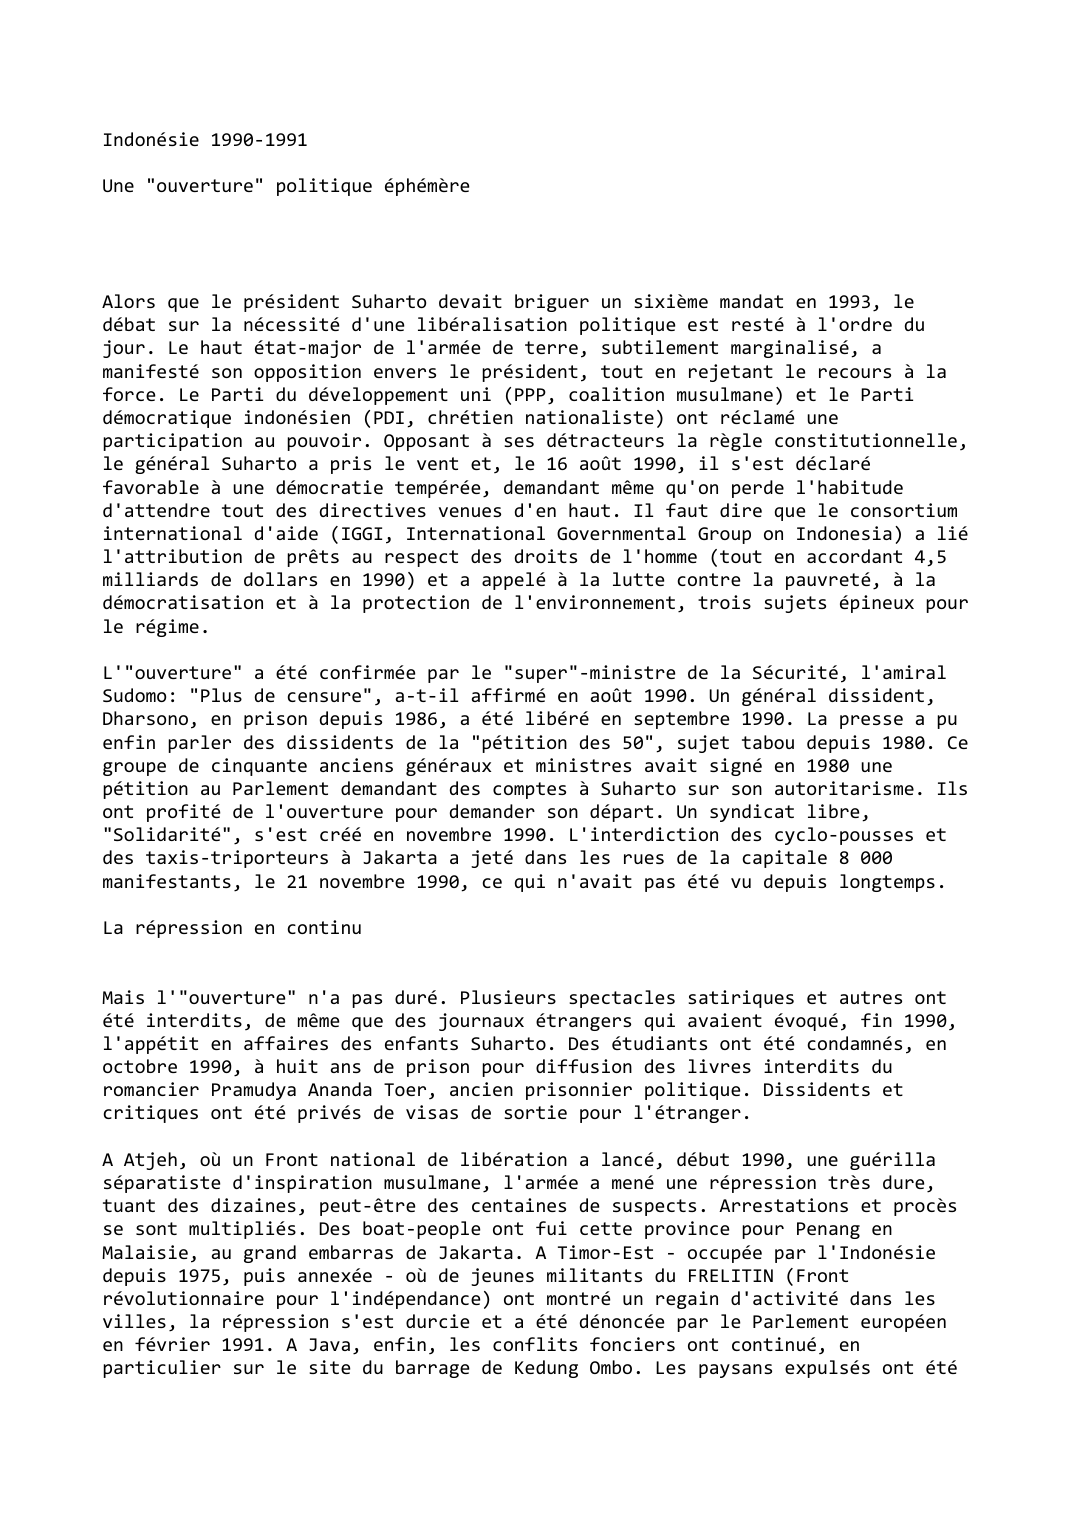 Prévisualisation du document Indonésie 1990-1991

Une "ouverture" politique éphémère